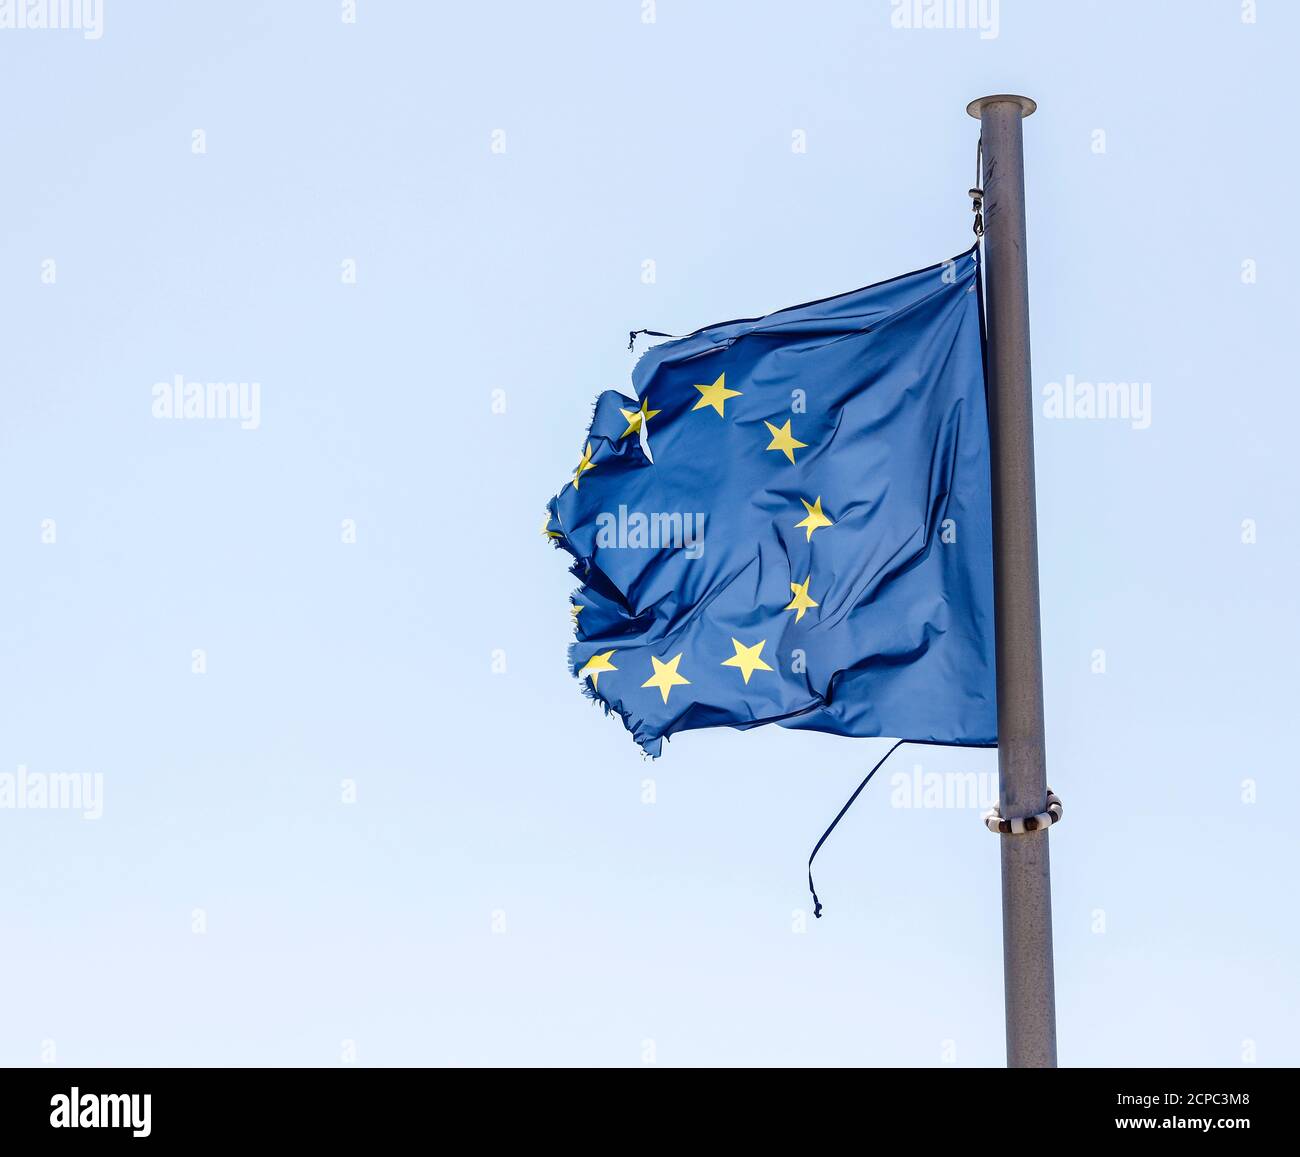 La bandera europea rota flama en el asta de la bandera en el viento, imagen simbólica de EUROPA EN CRISIS. Foto de stock